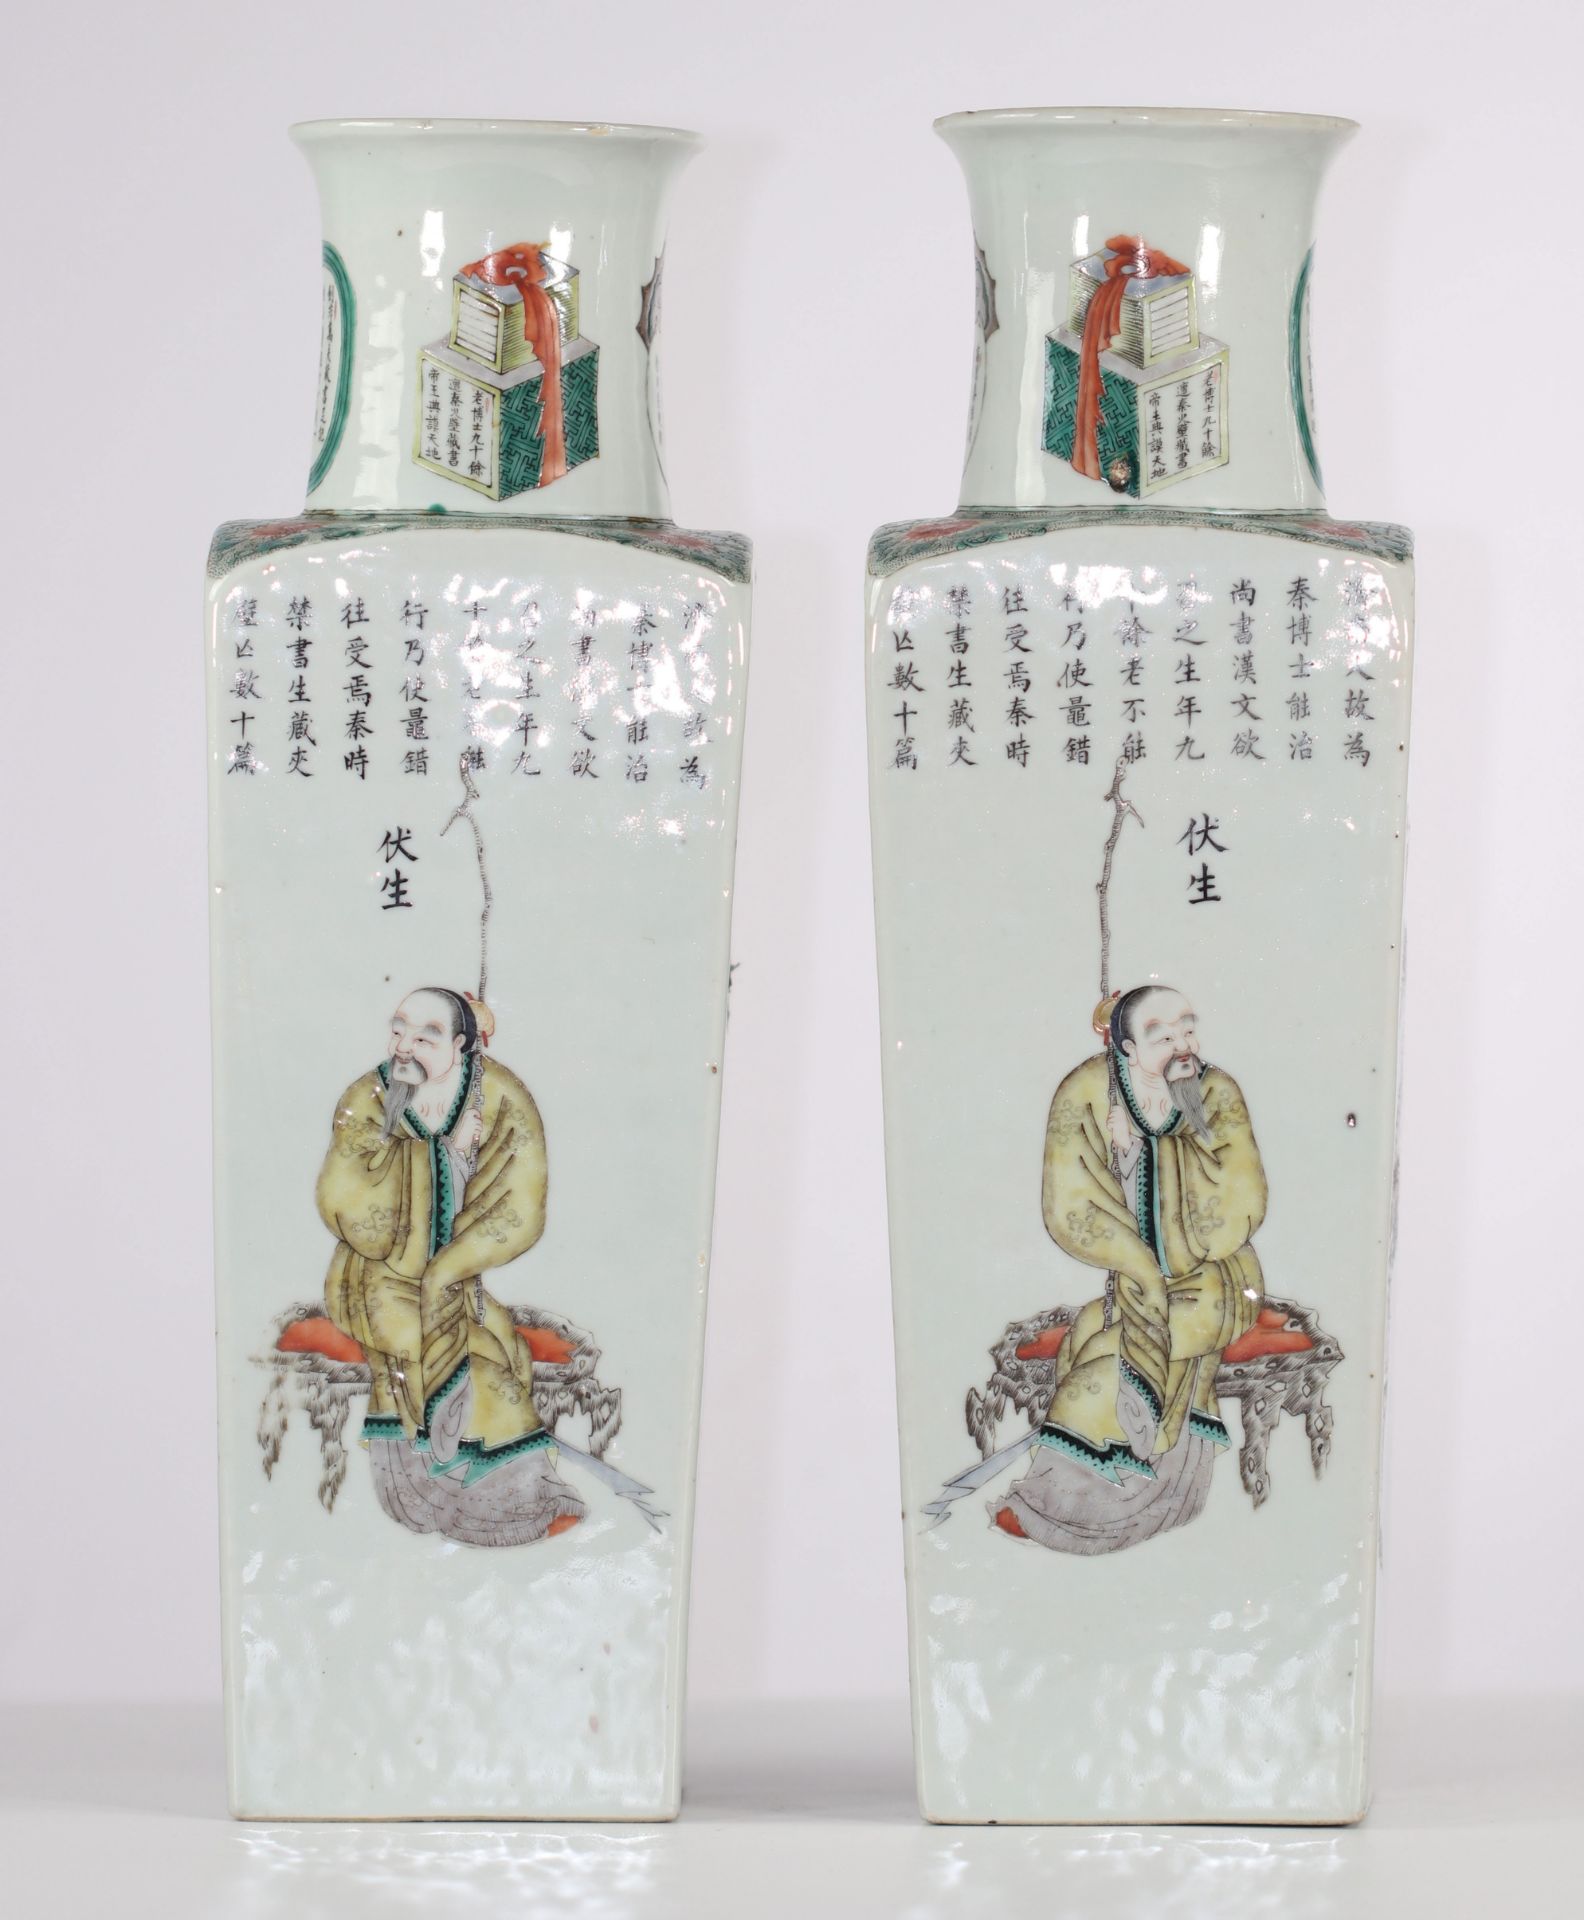 Pair of quadrangular porcelain vases, Wu Shang Pu decor, 19th century China. - Image 3 of 6